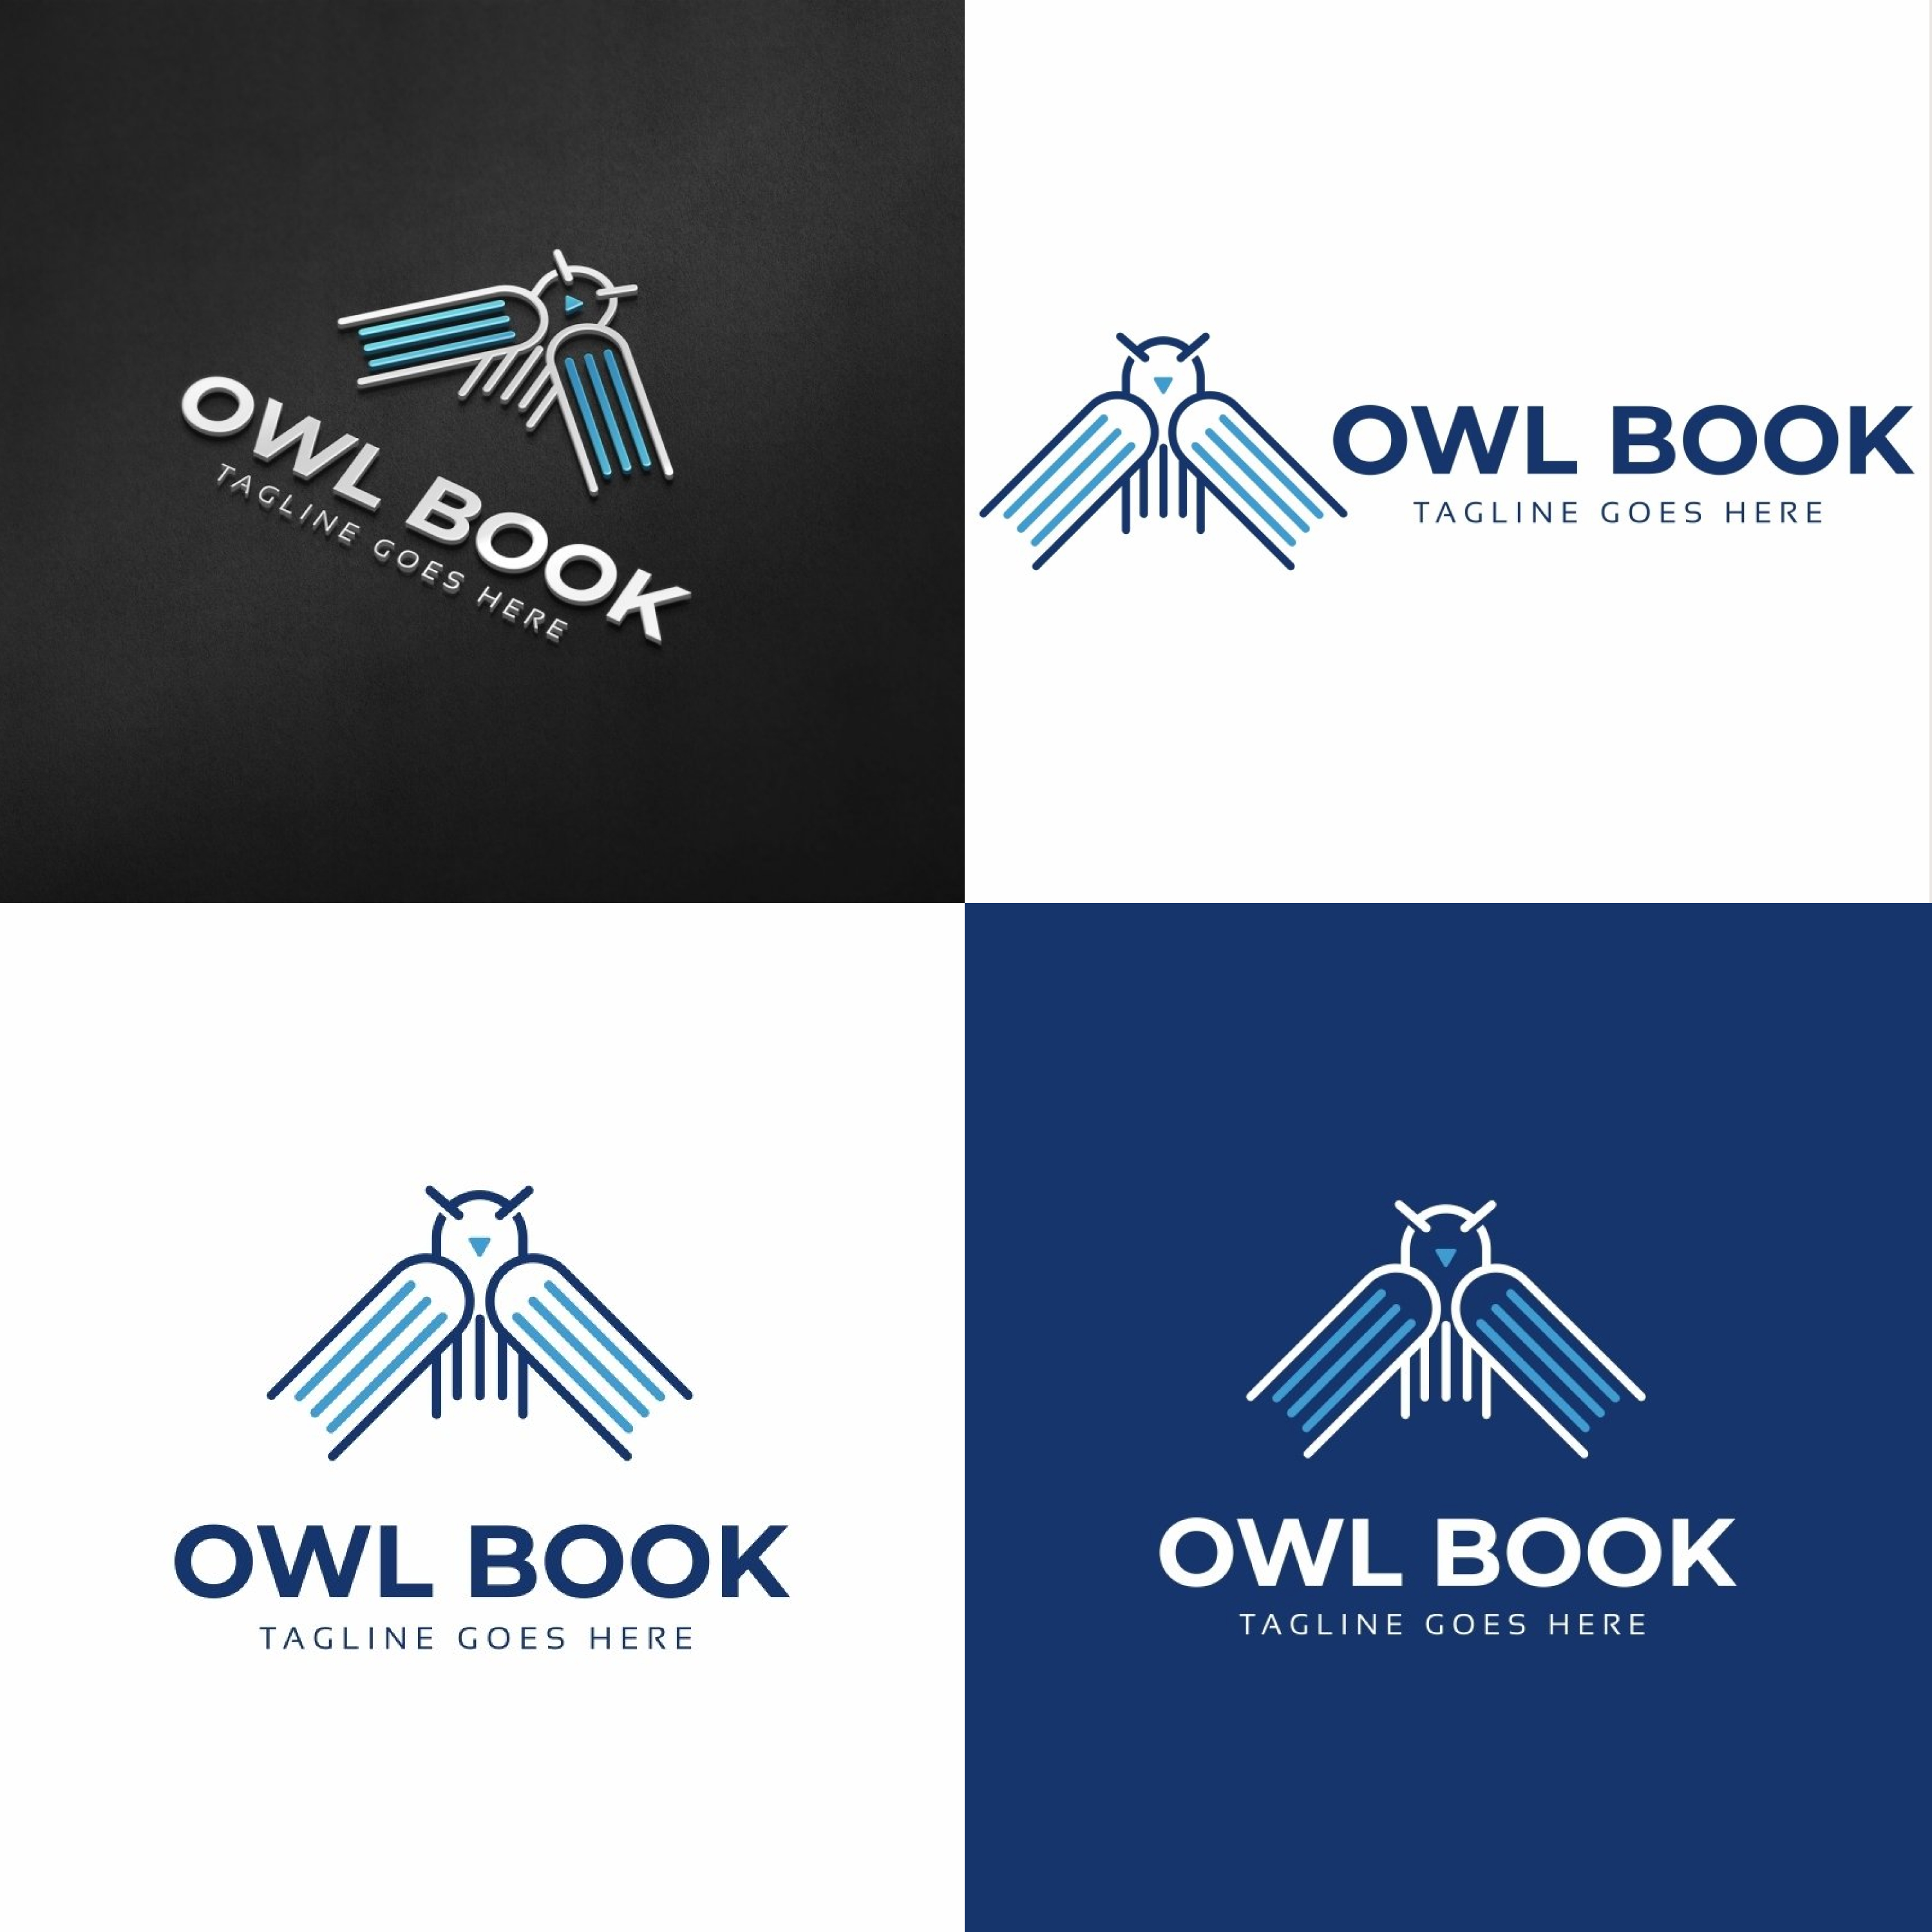 Preview owl book logo.